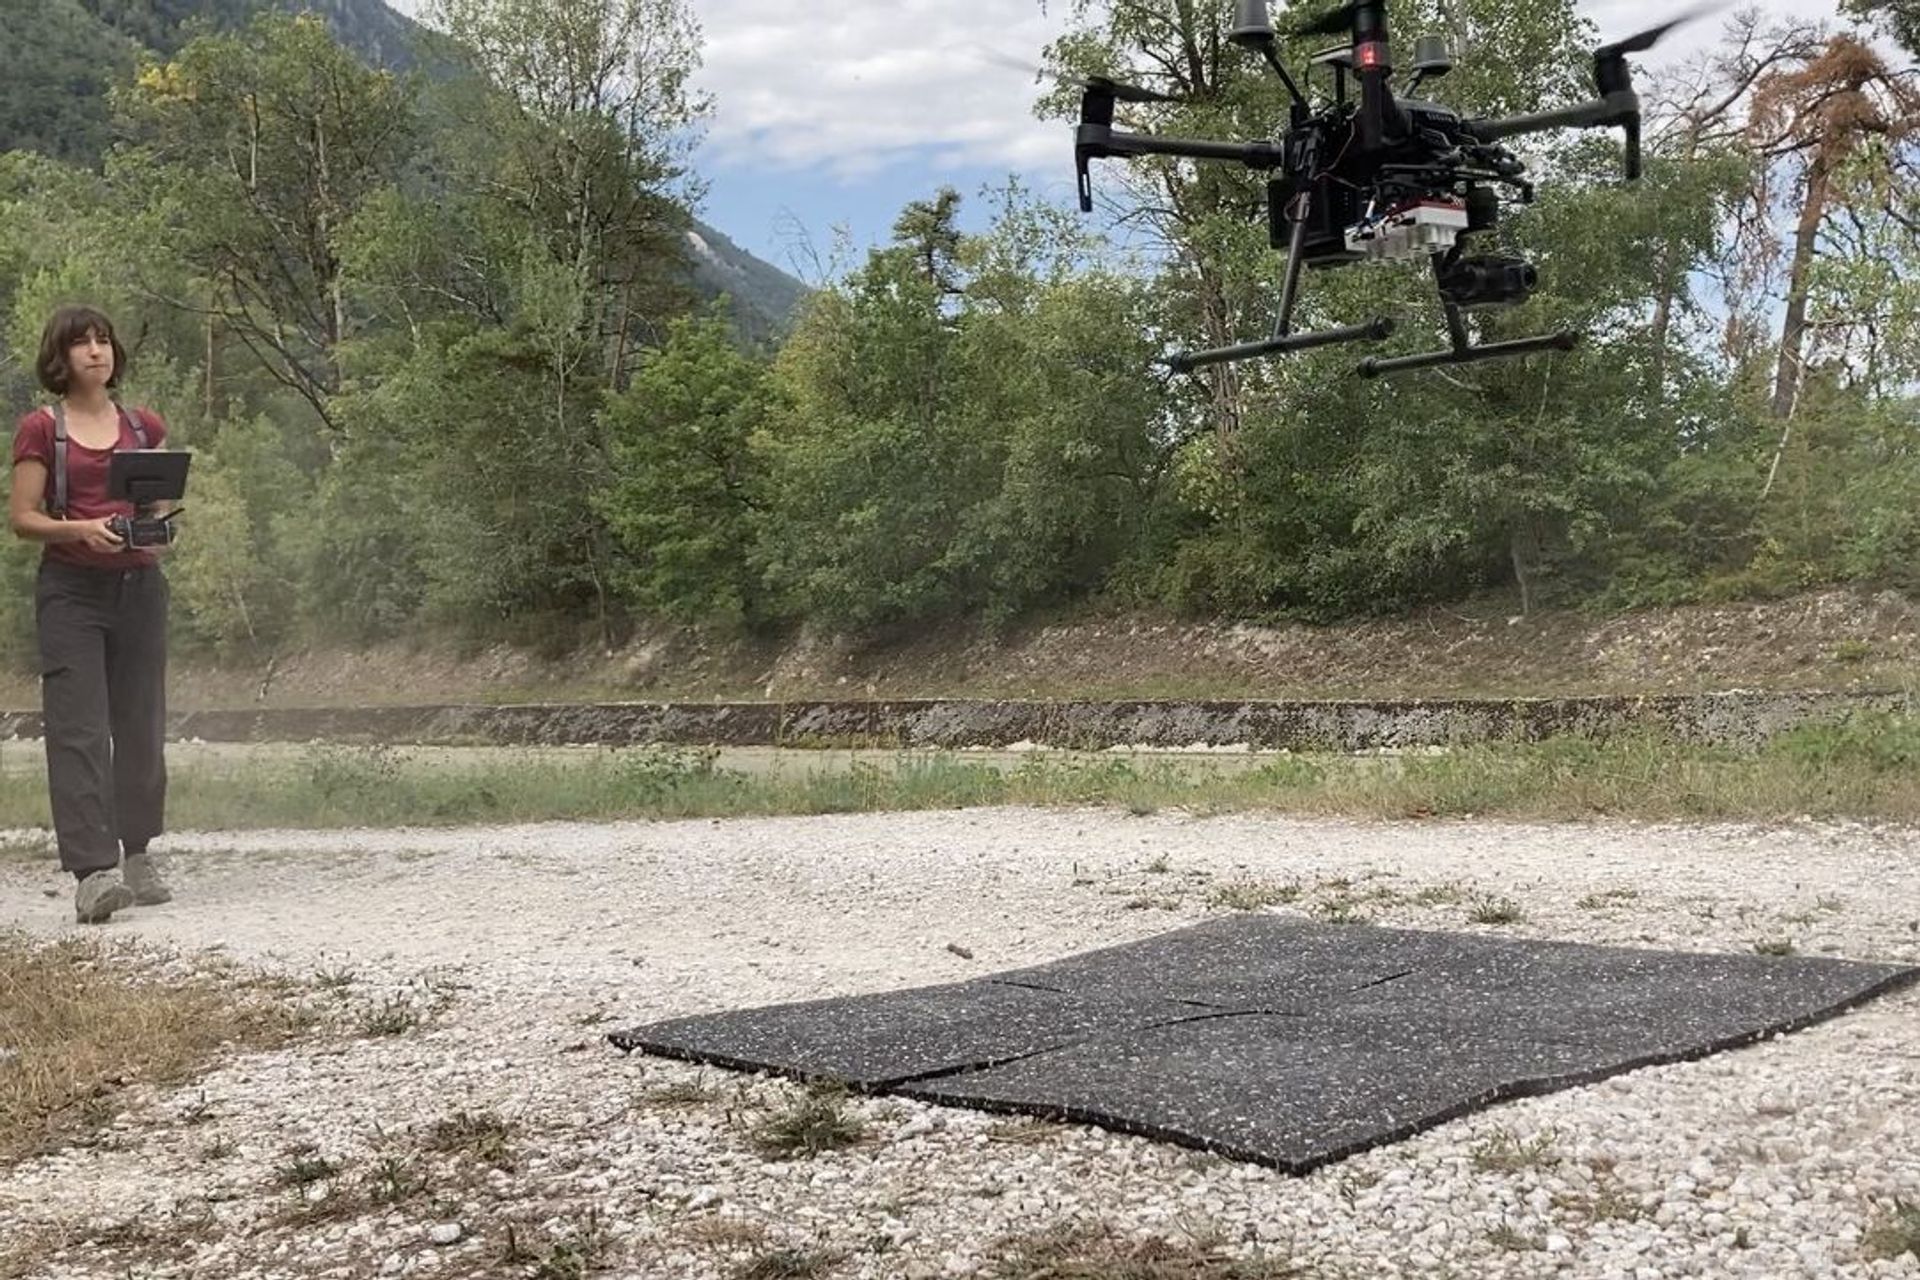 La ricercatrice Petra D'Odorico alle prese con il volo di un drone nel sito di ricerca forestale del Pfynwald, in Vallese, nell'estate del 2020 (Foto Frederik BaumgartenWSL)